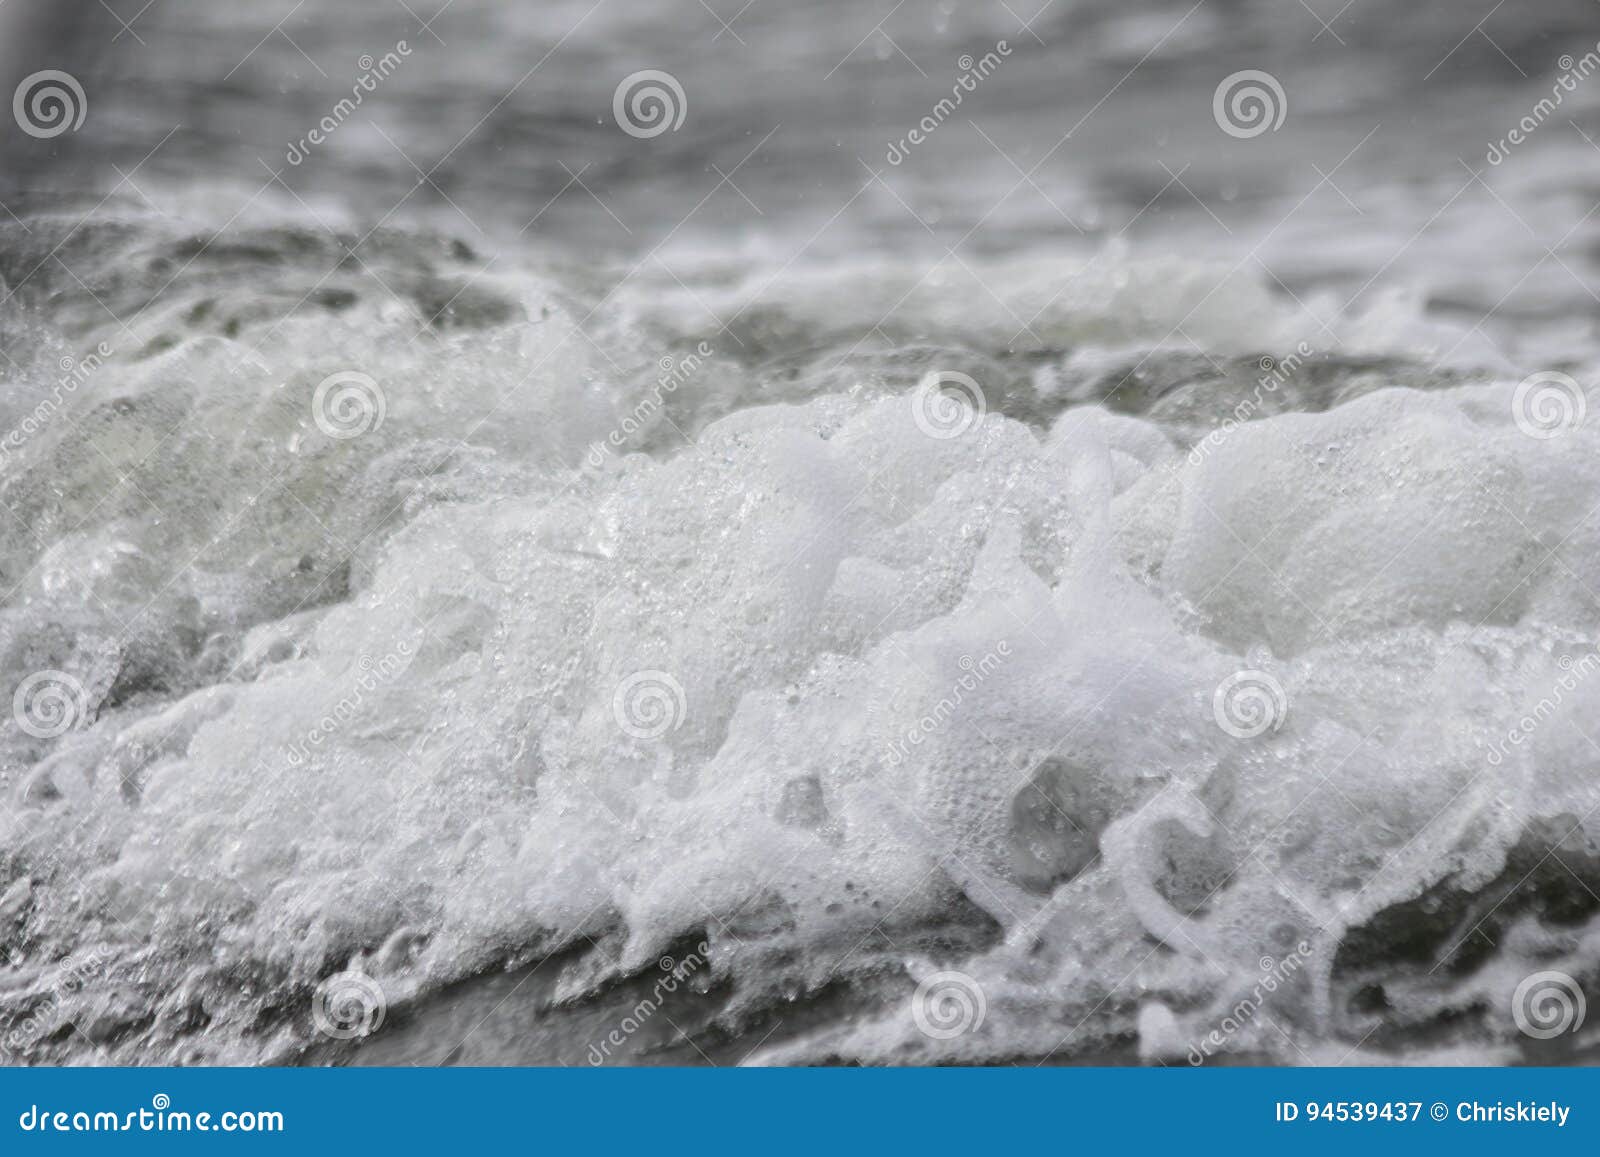 foam in sea waves